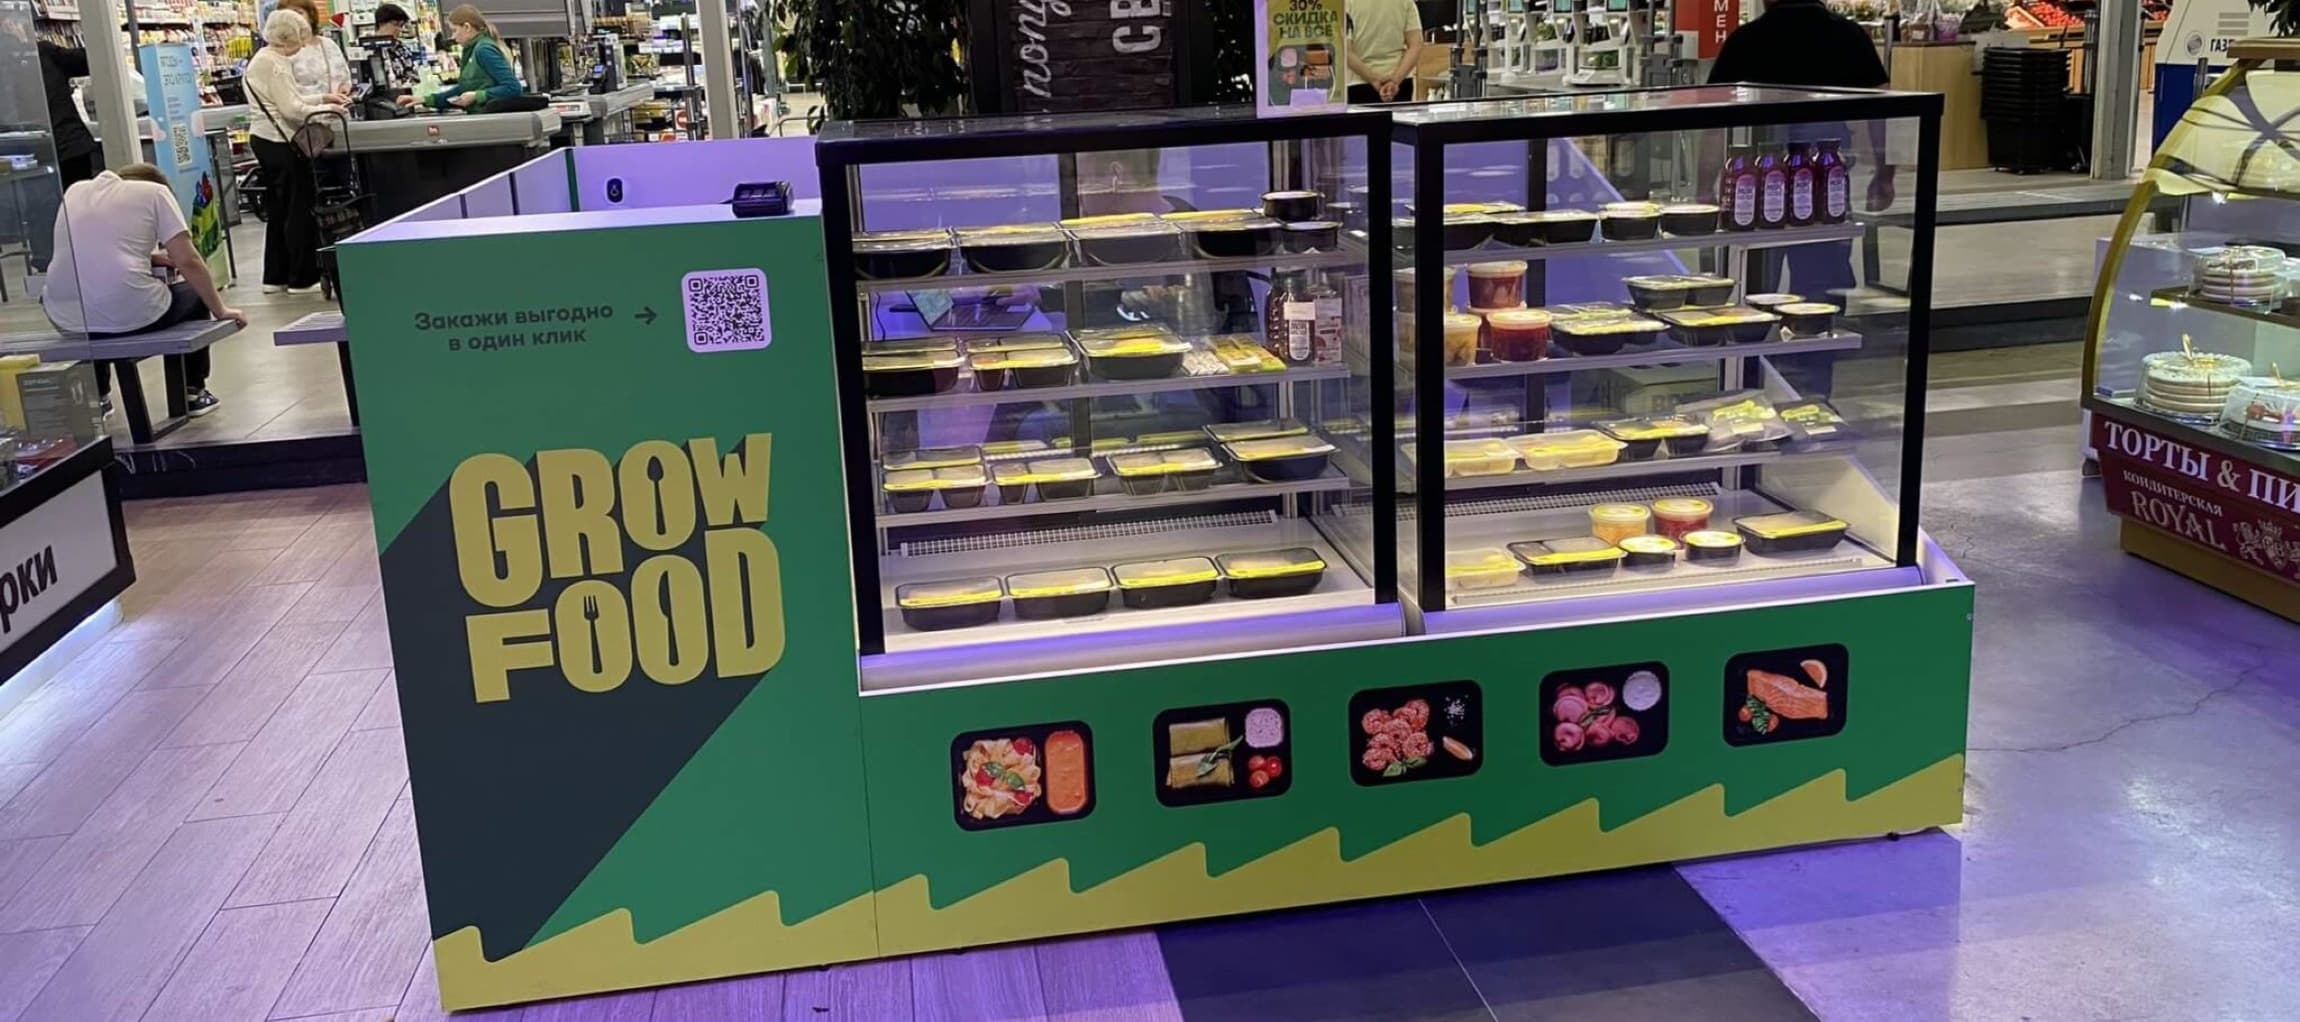 Фото новости: "Grow Food закрыл розничные точки с готовой едой в торговых центрах"